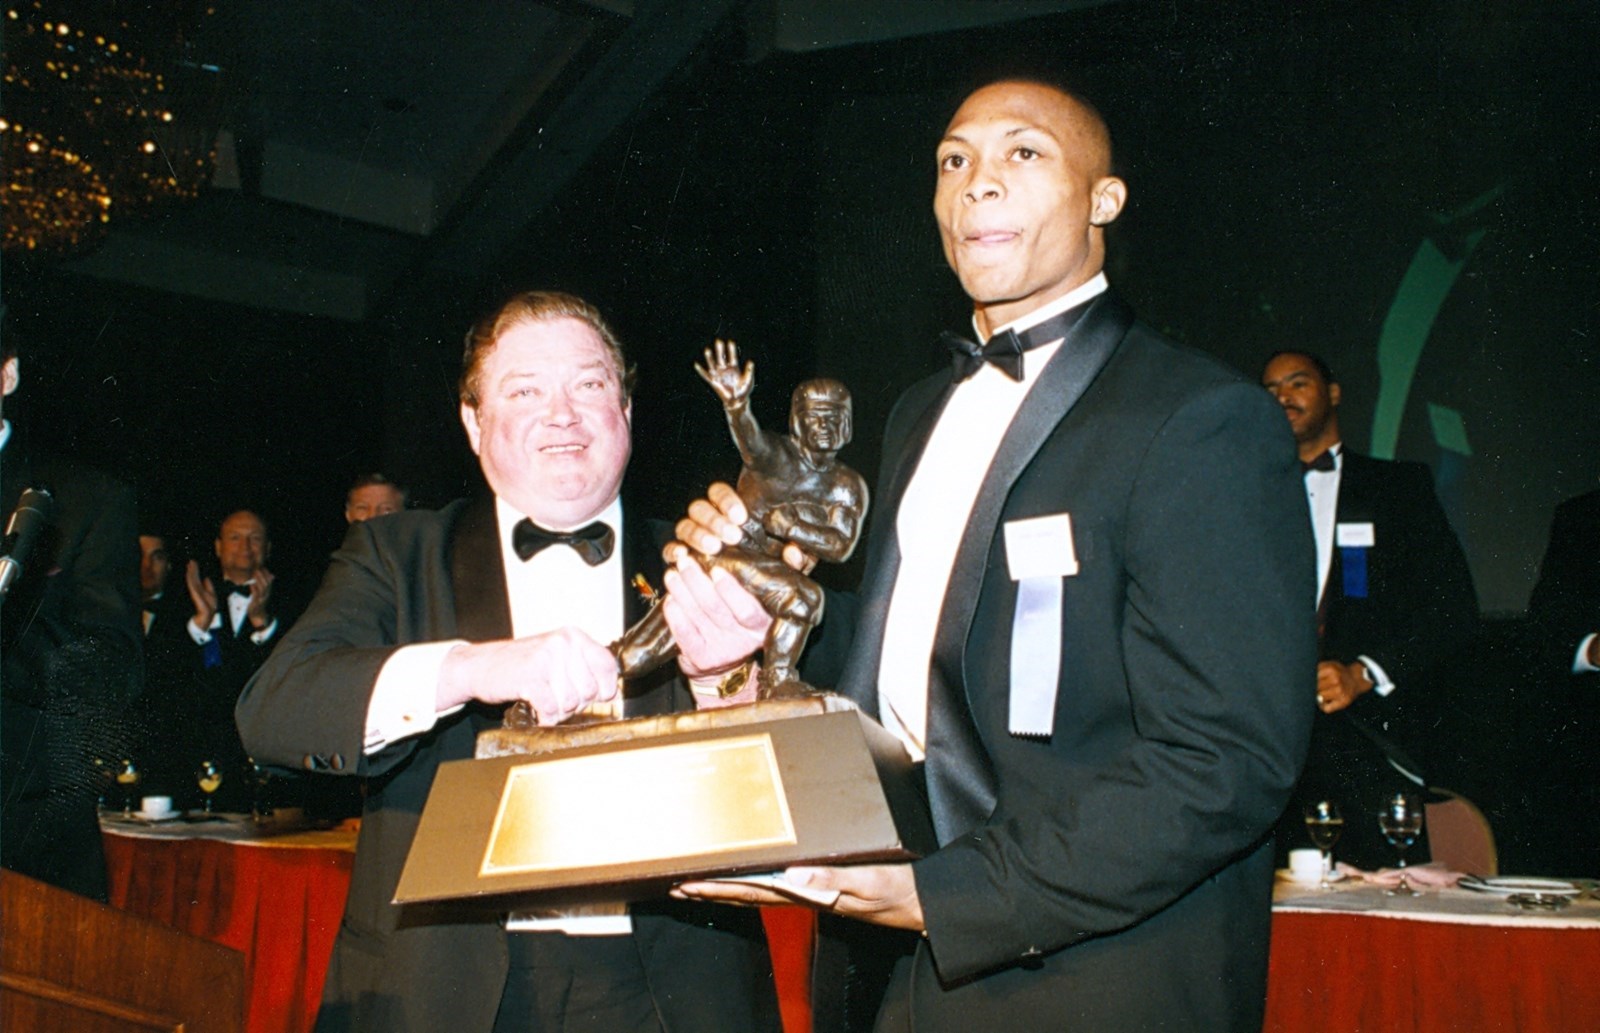 Eddie George 1995 Heisman Trophy winner